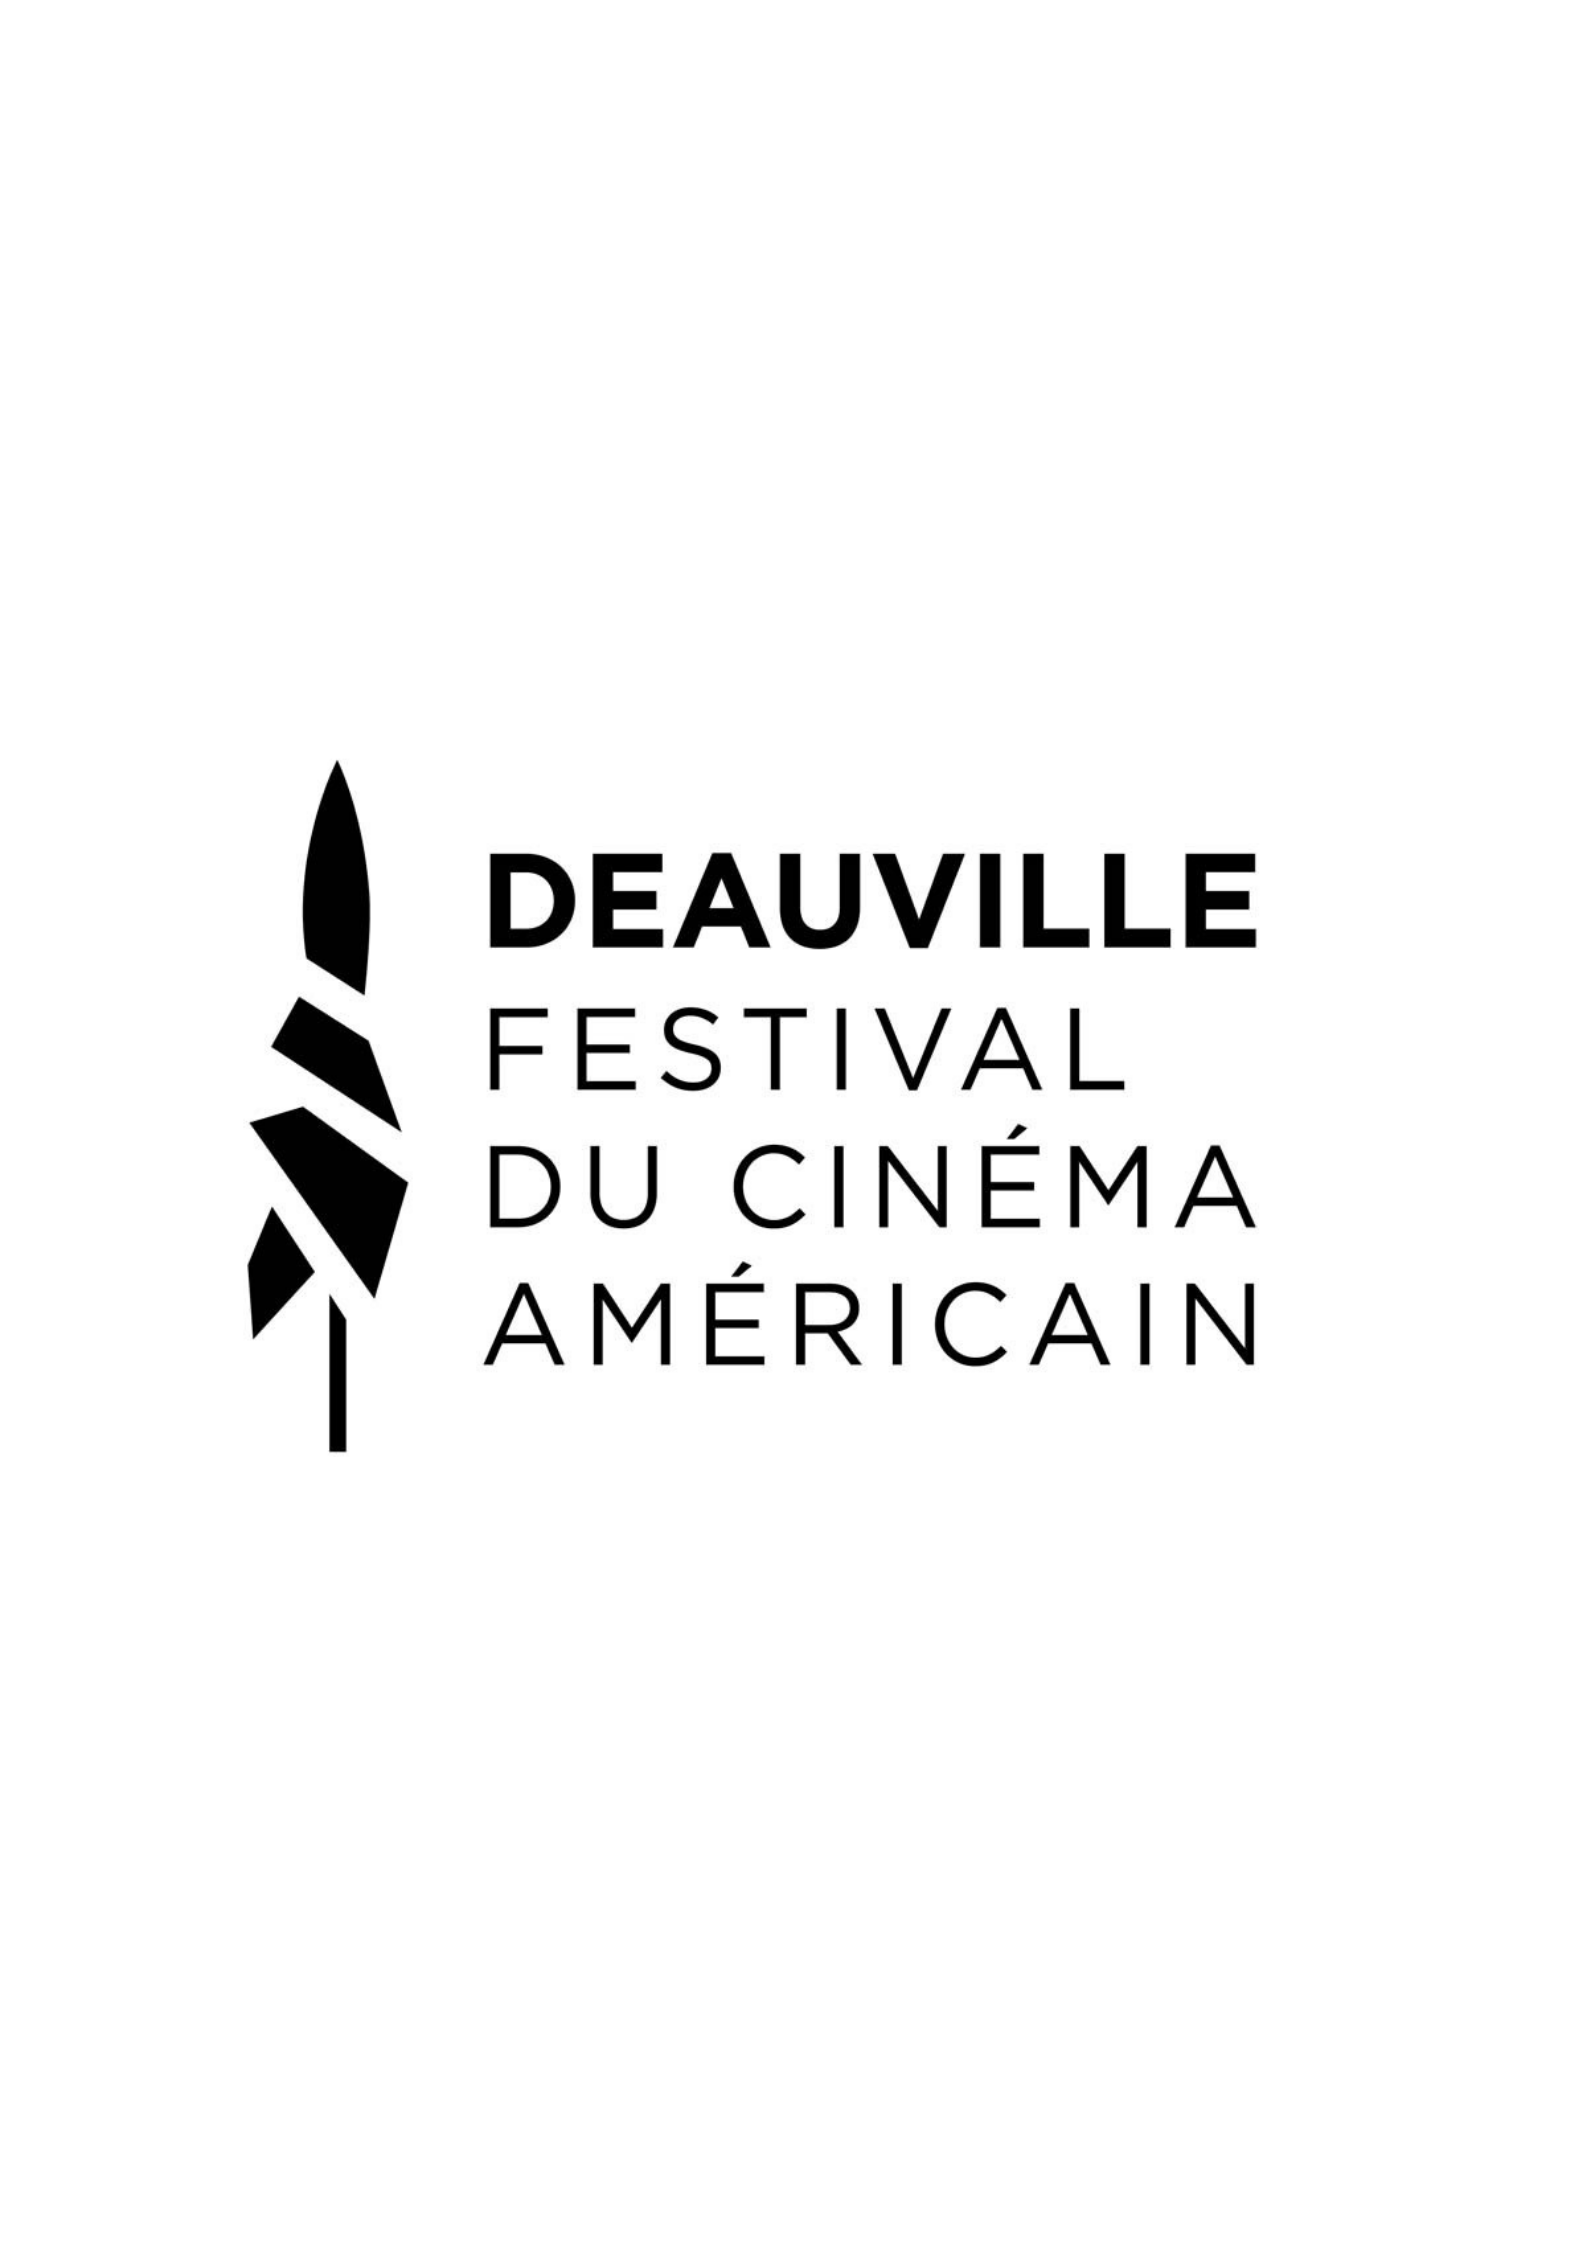 Festival du cinéma américain de Deauville